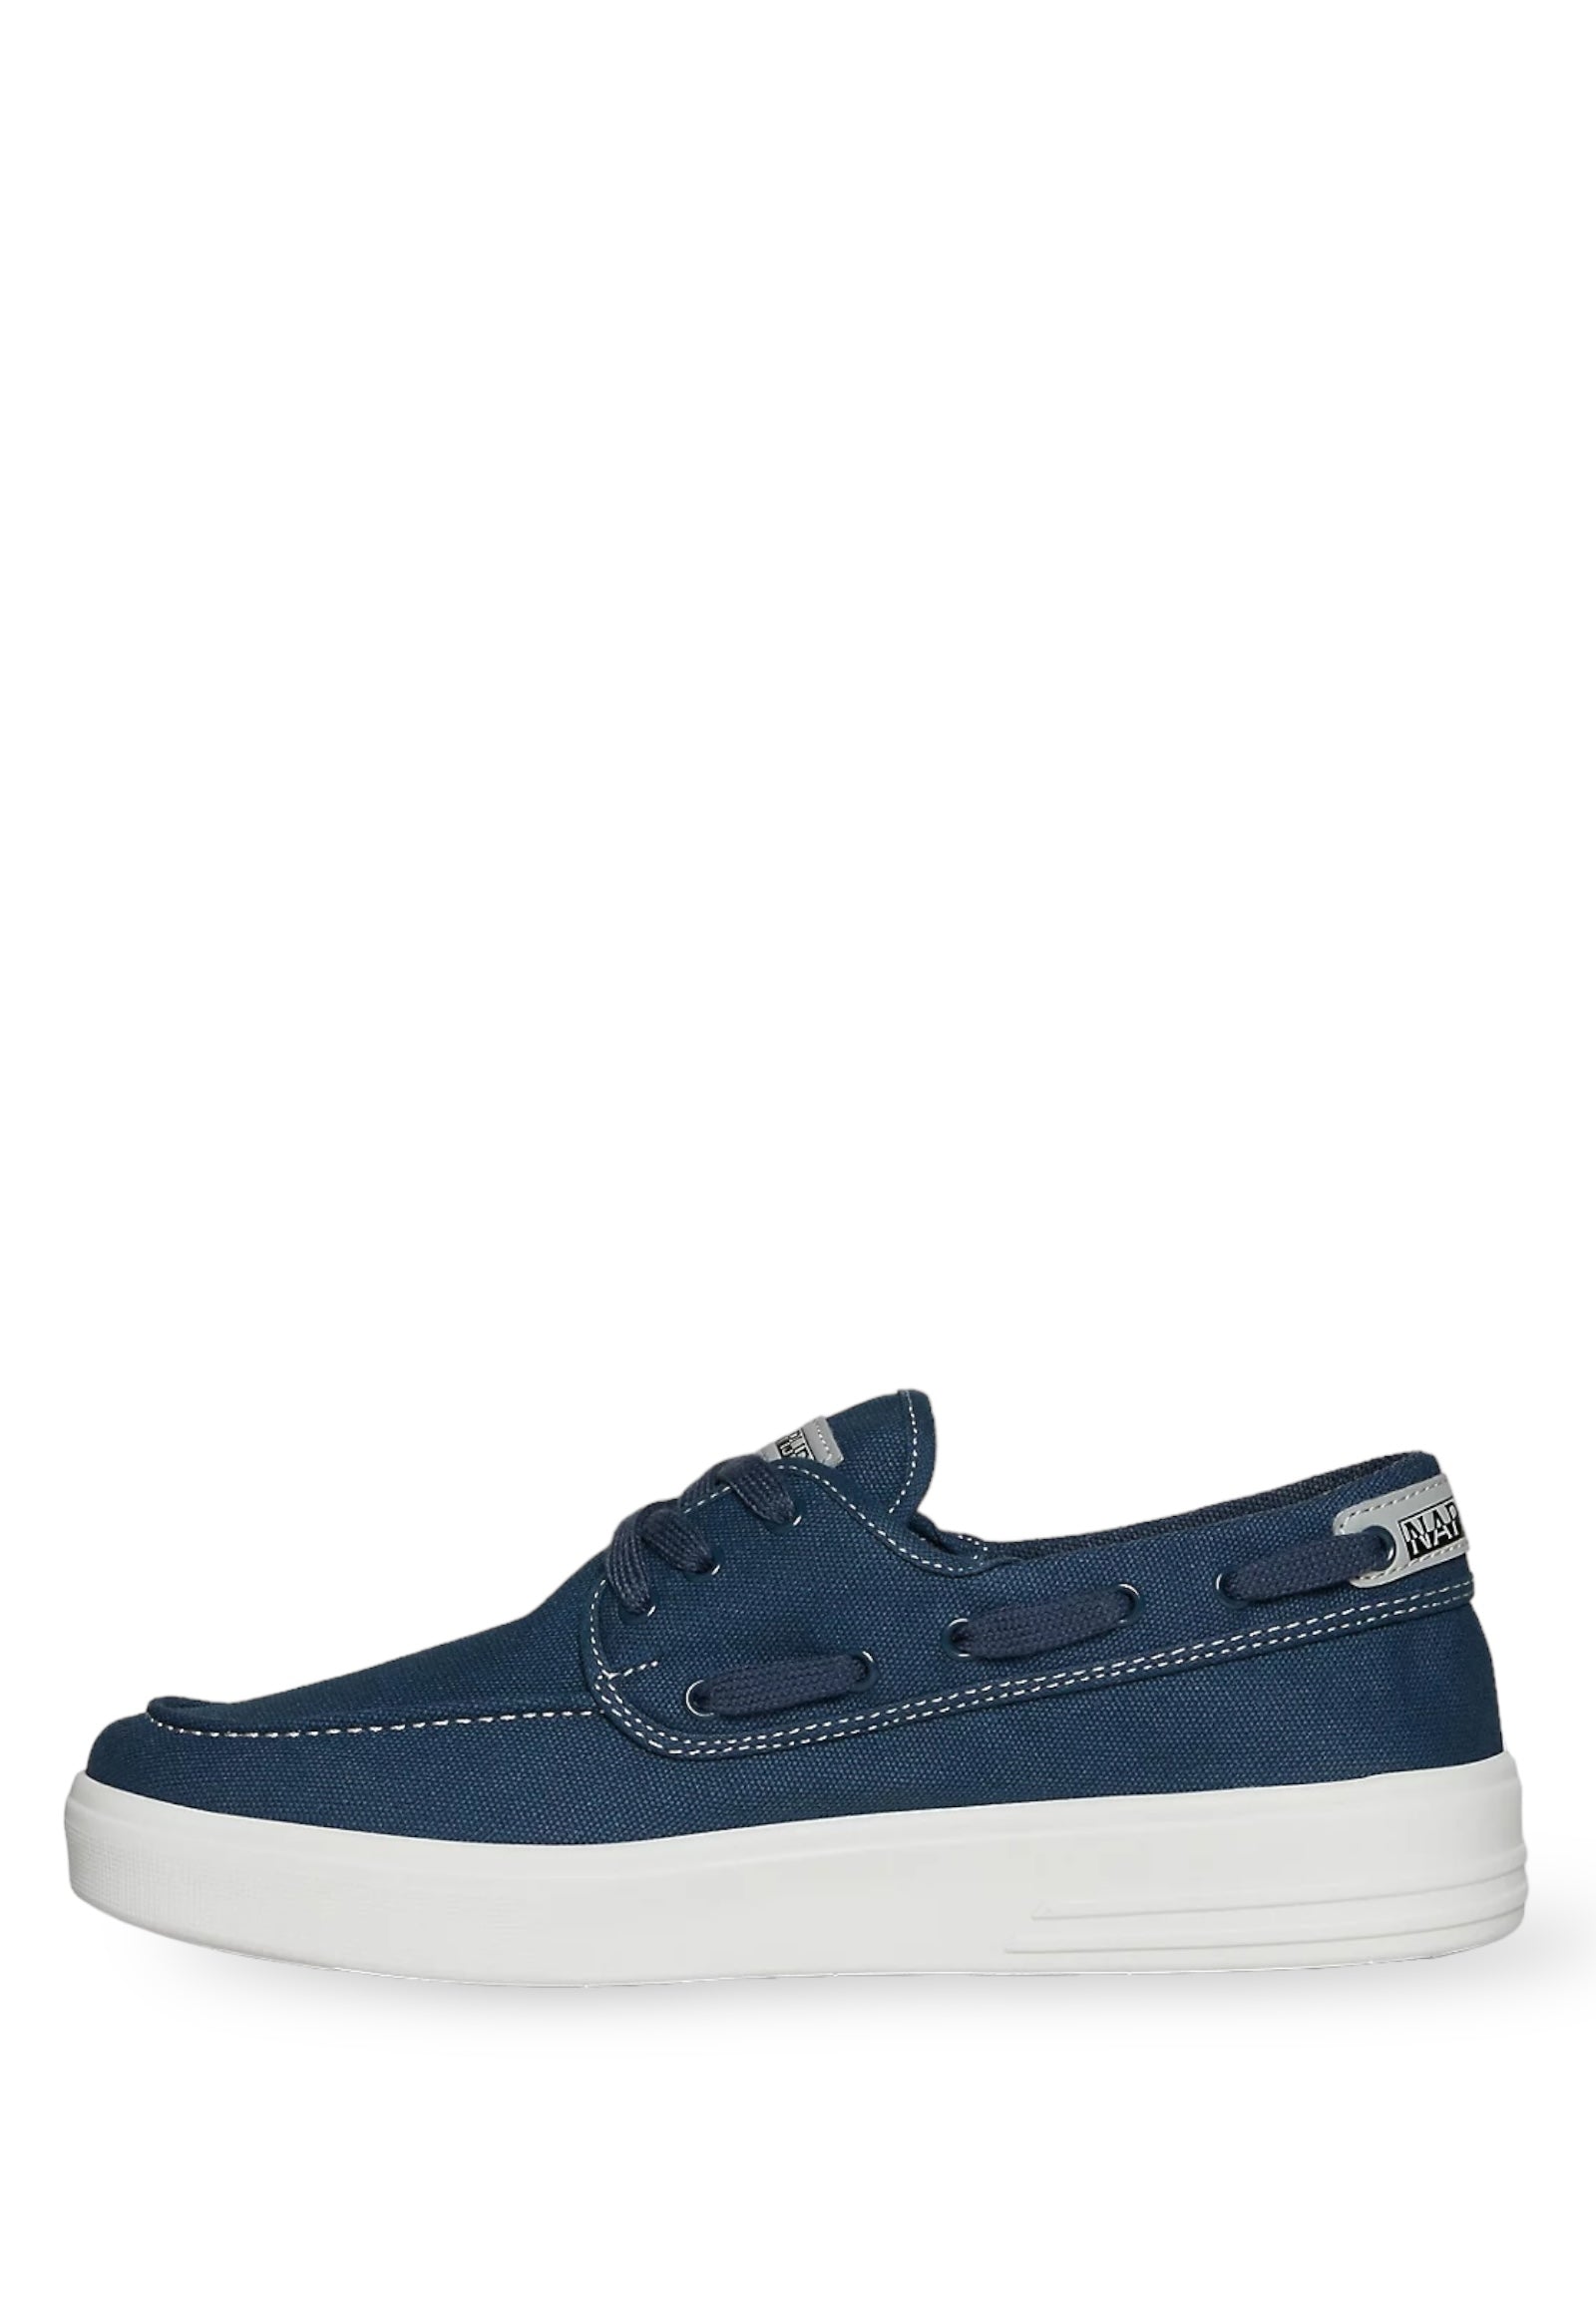 Sneakers Np0a4i7i Blue Marine